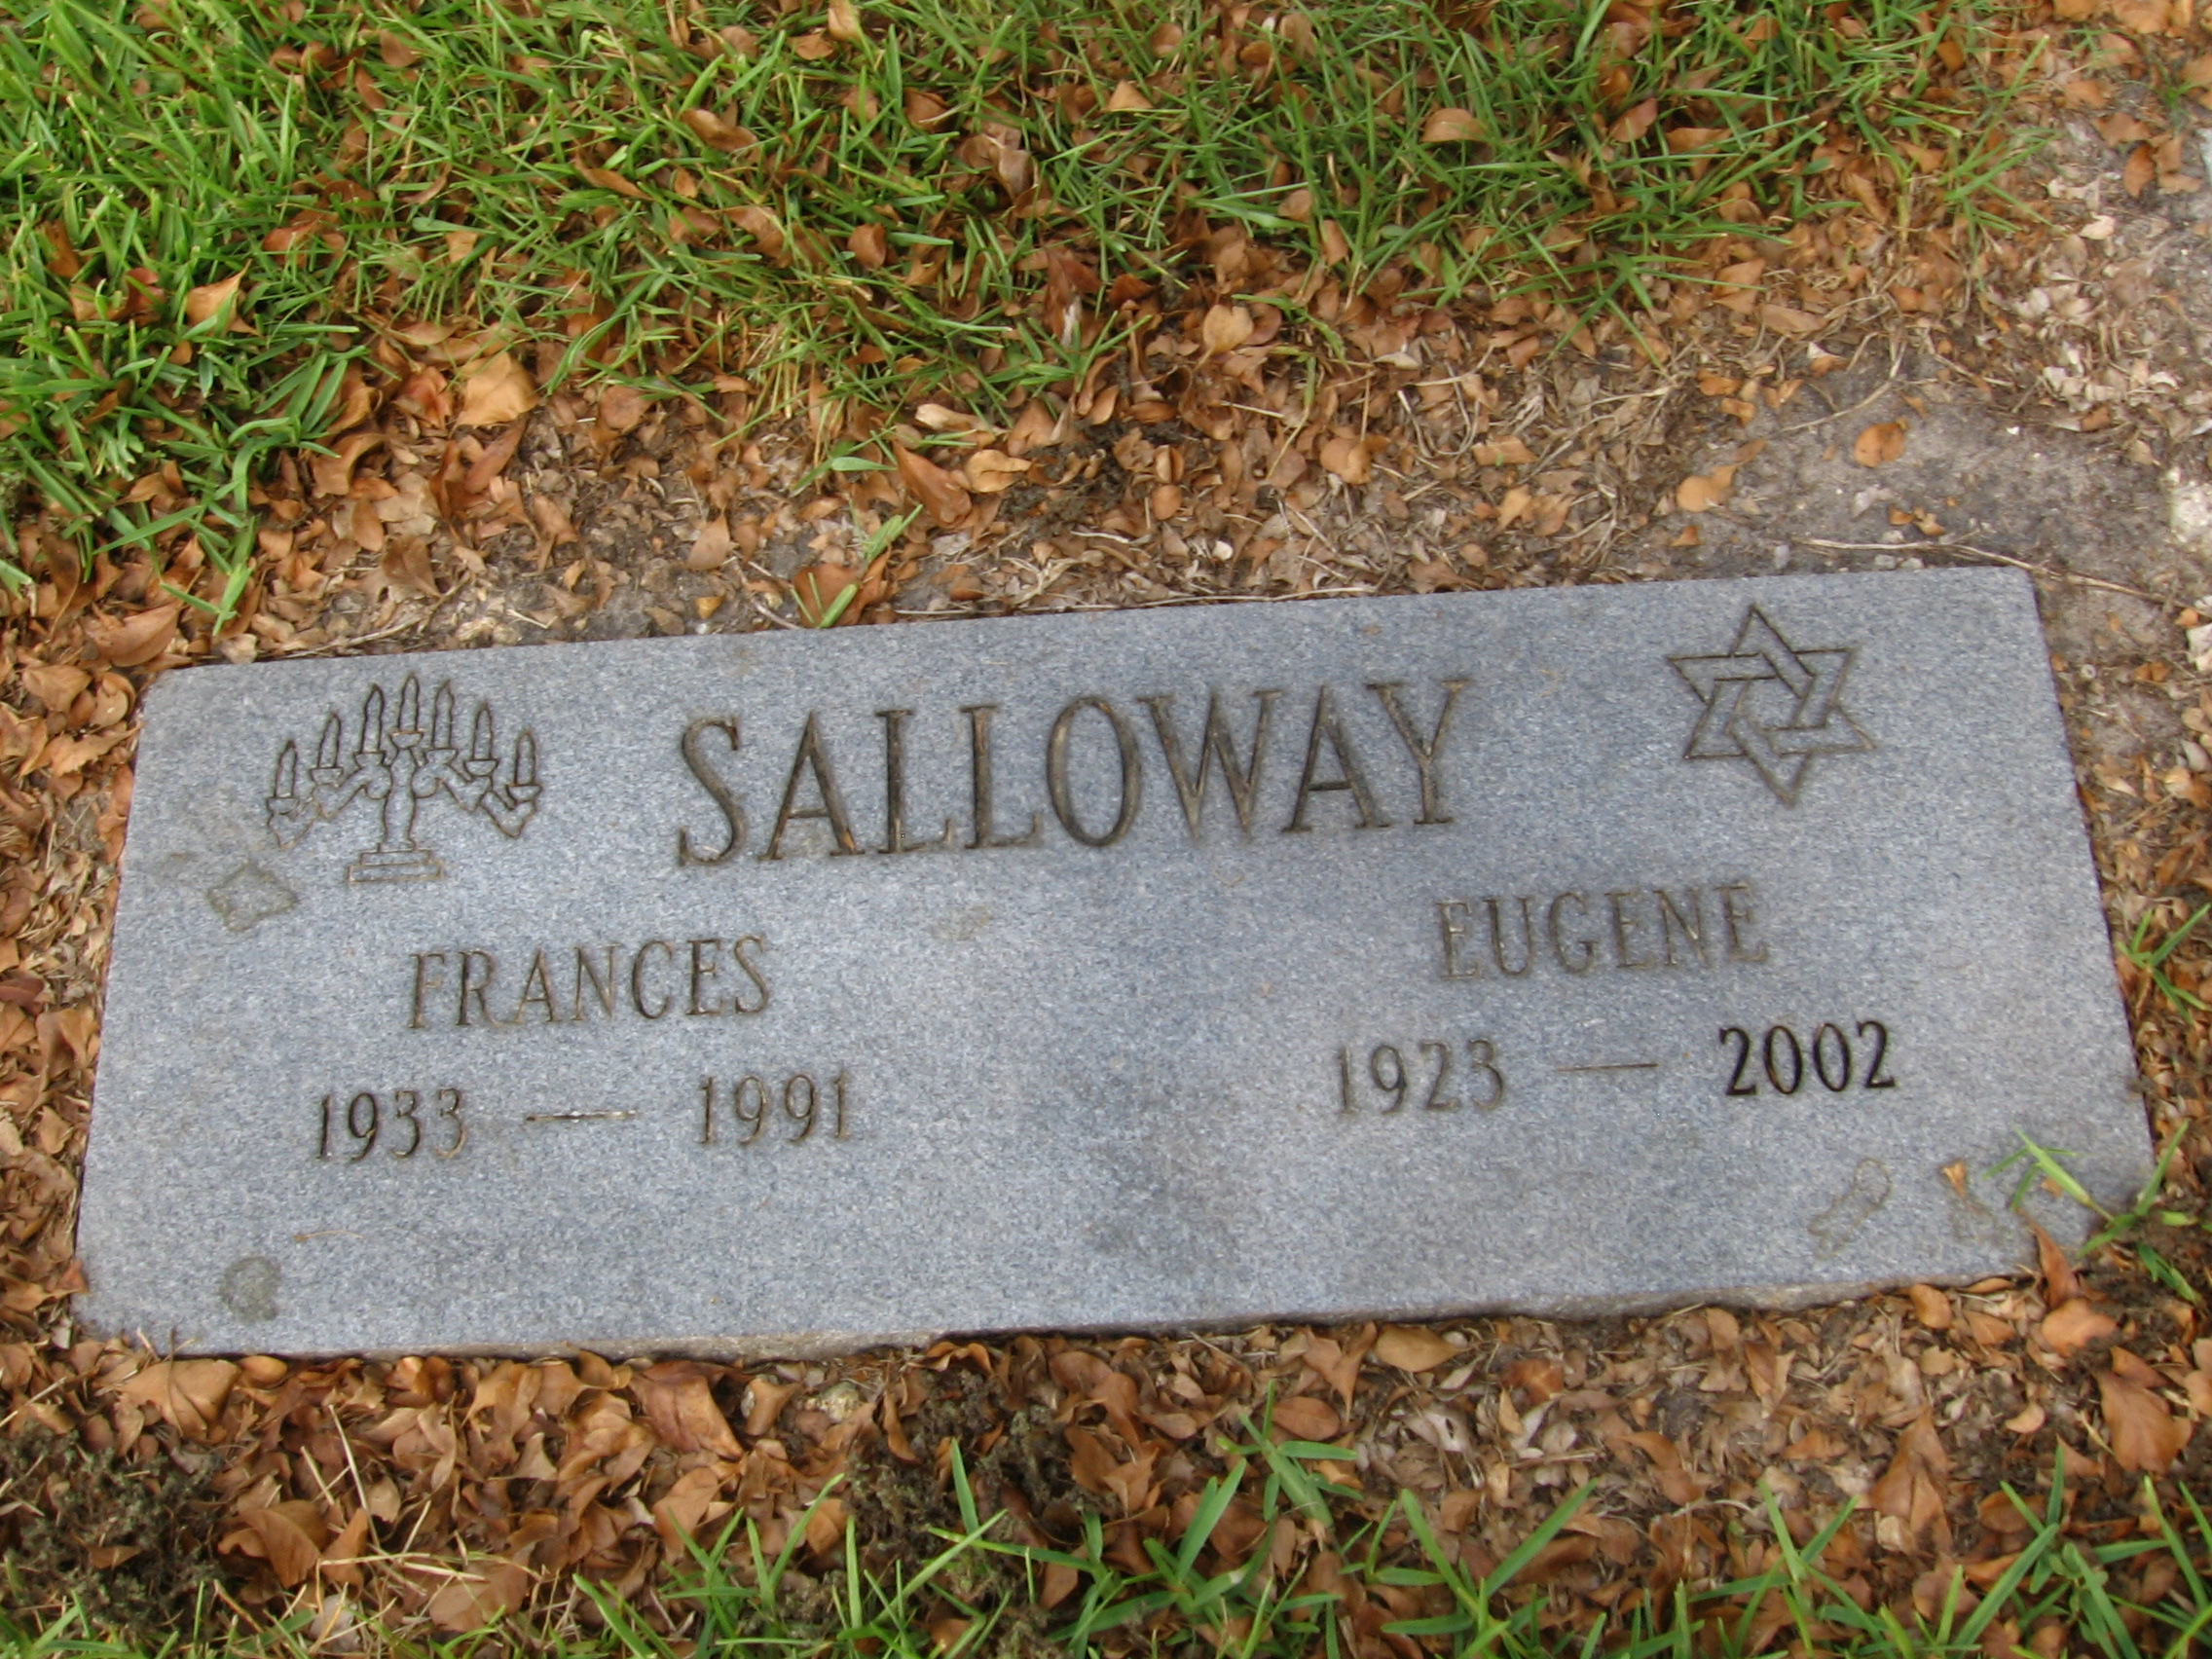 Frances Salloway